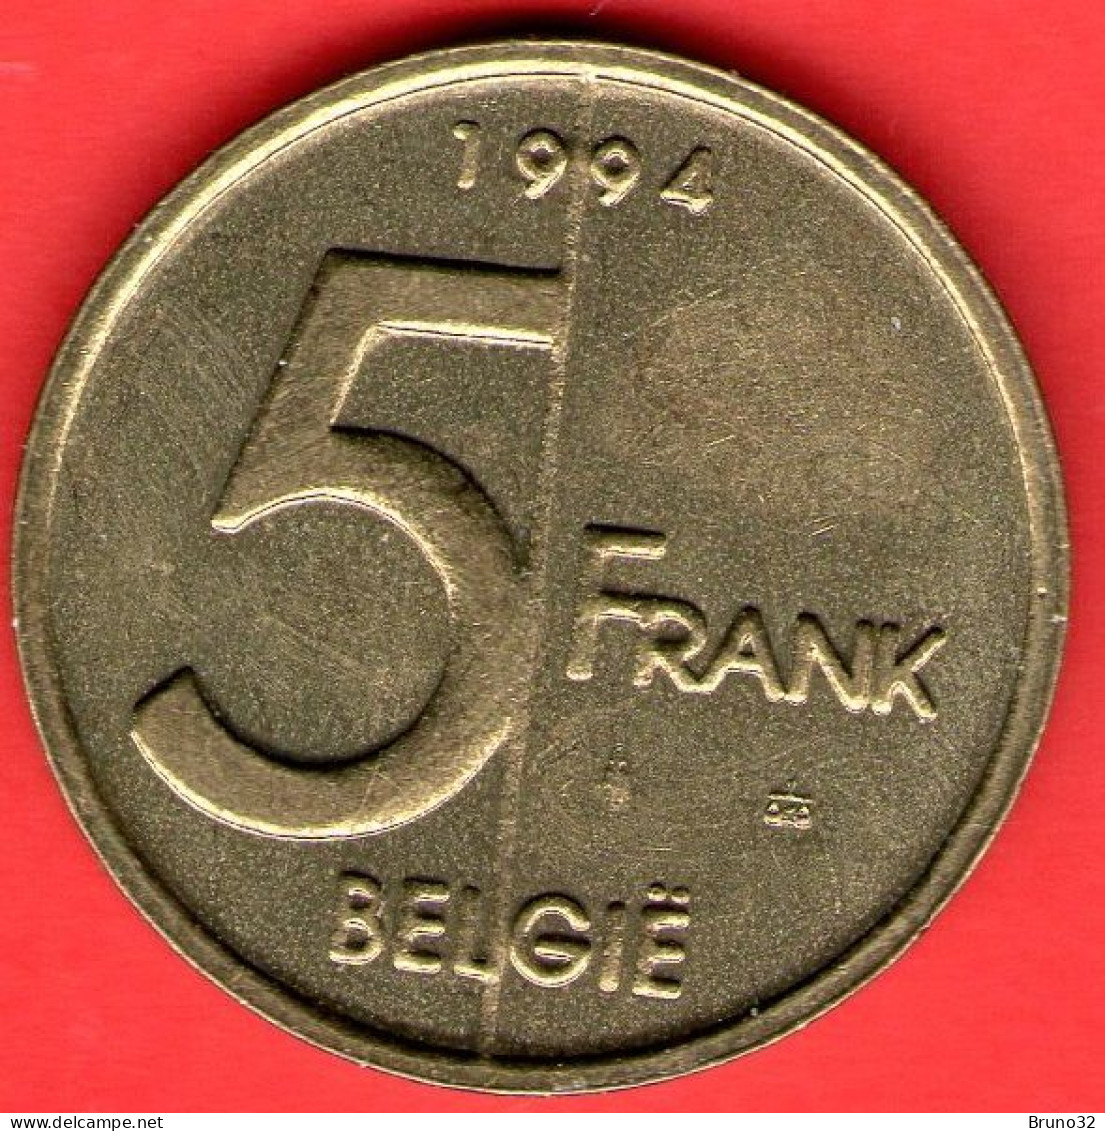 Belgio - Belgium - Belgique - Belgie - 1994 - 5 Franchi - QFDC/aUNC - Come Da Foto - 5 Frank